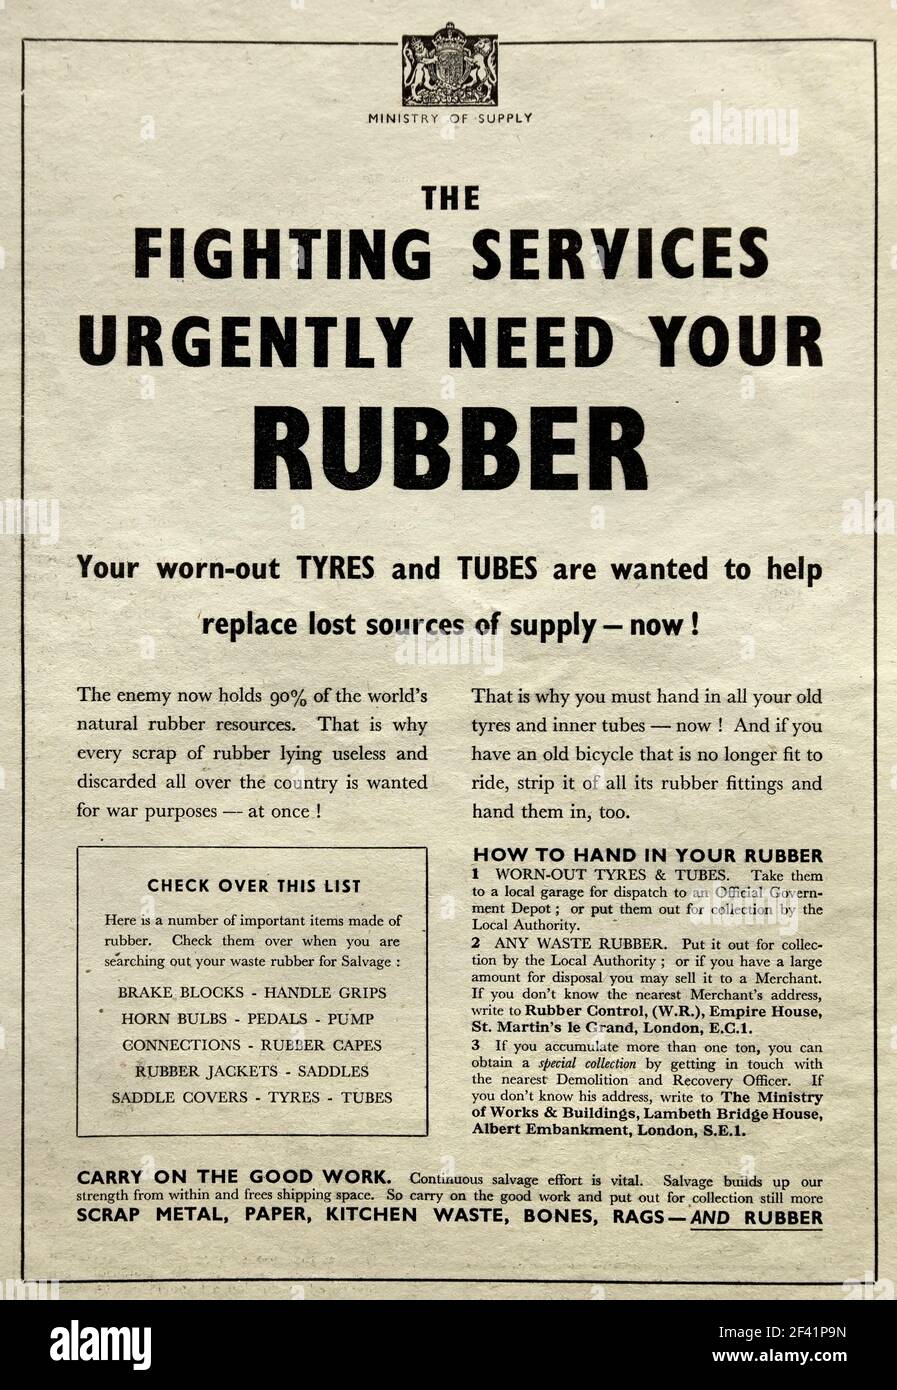 Vintage 1942 Kriegszeit Hinweis ermutigend Radfahrer zu speichern und recyceln Gummi, aus dem Ministerium für Versorgung. Stockfoto